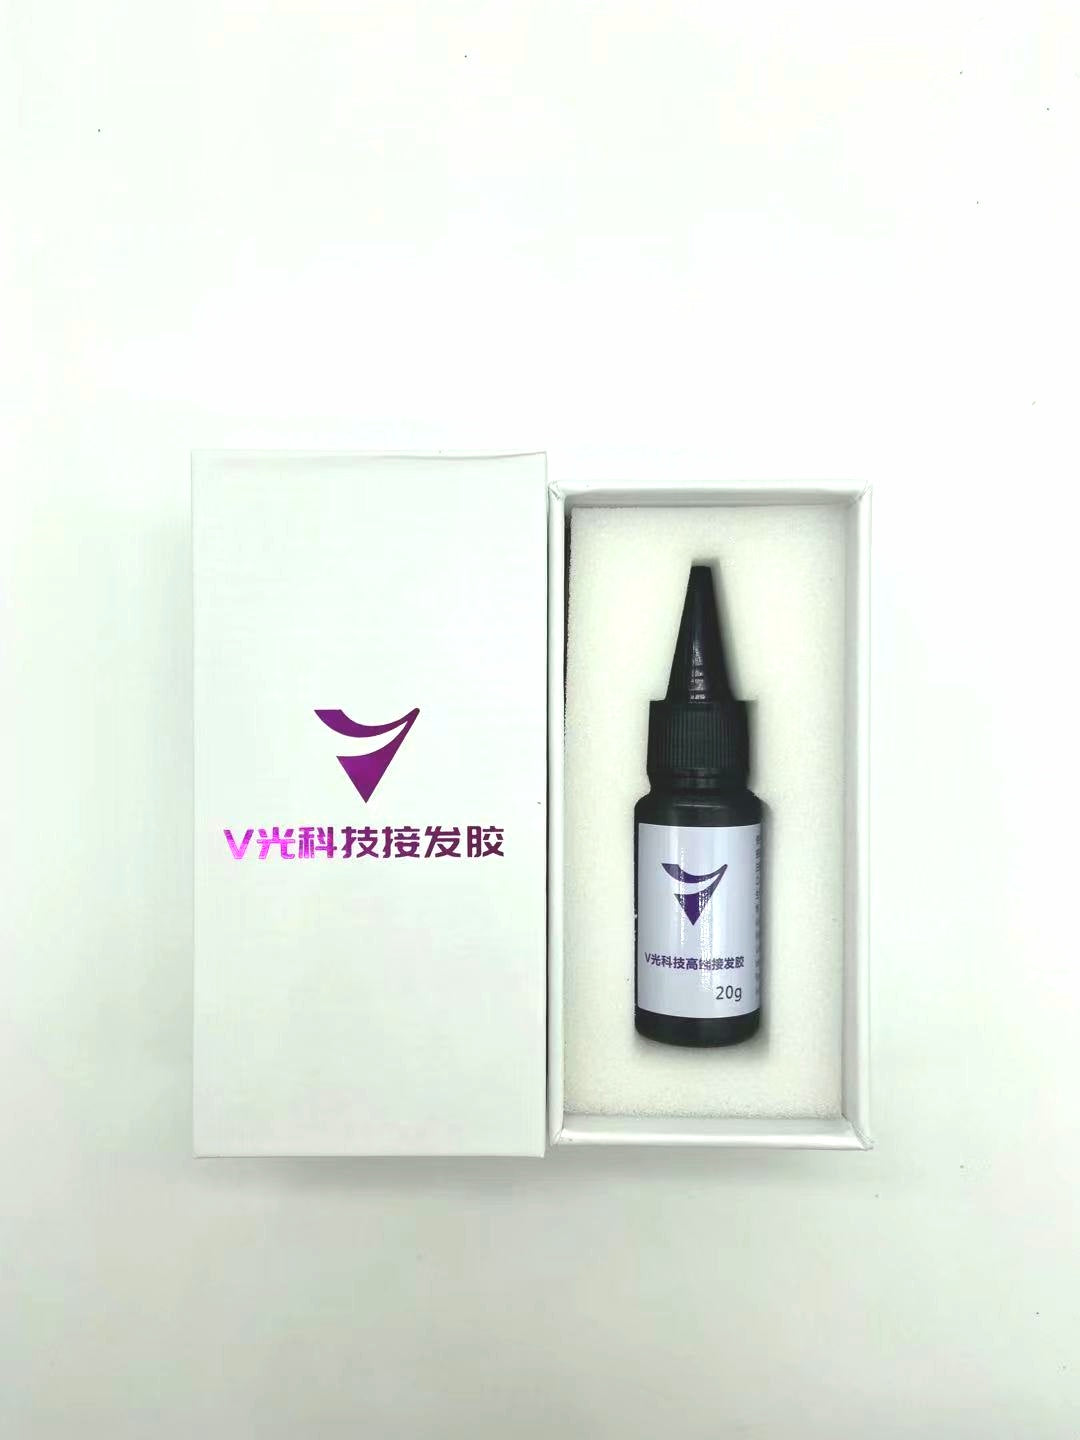 V-Light UV glue 5 bottles – V-light hair extensions